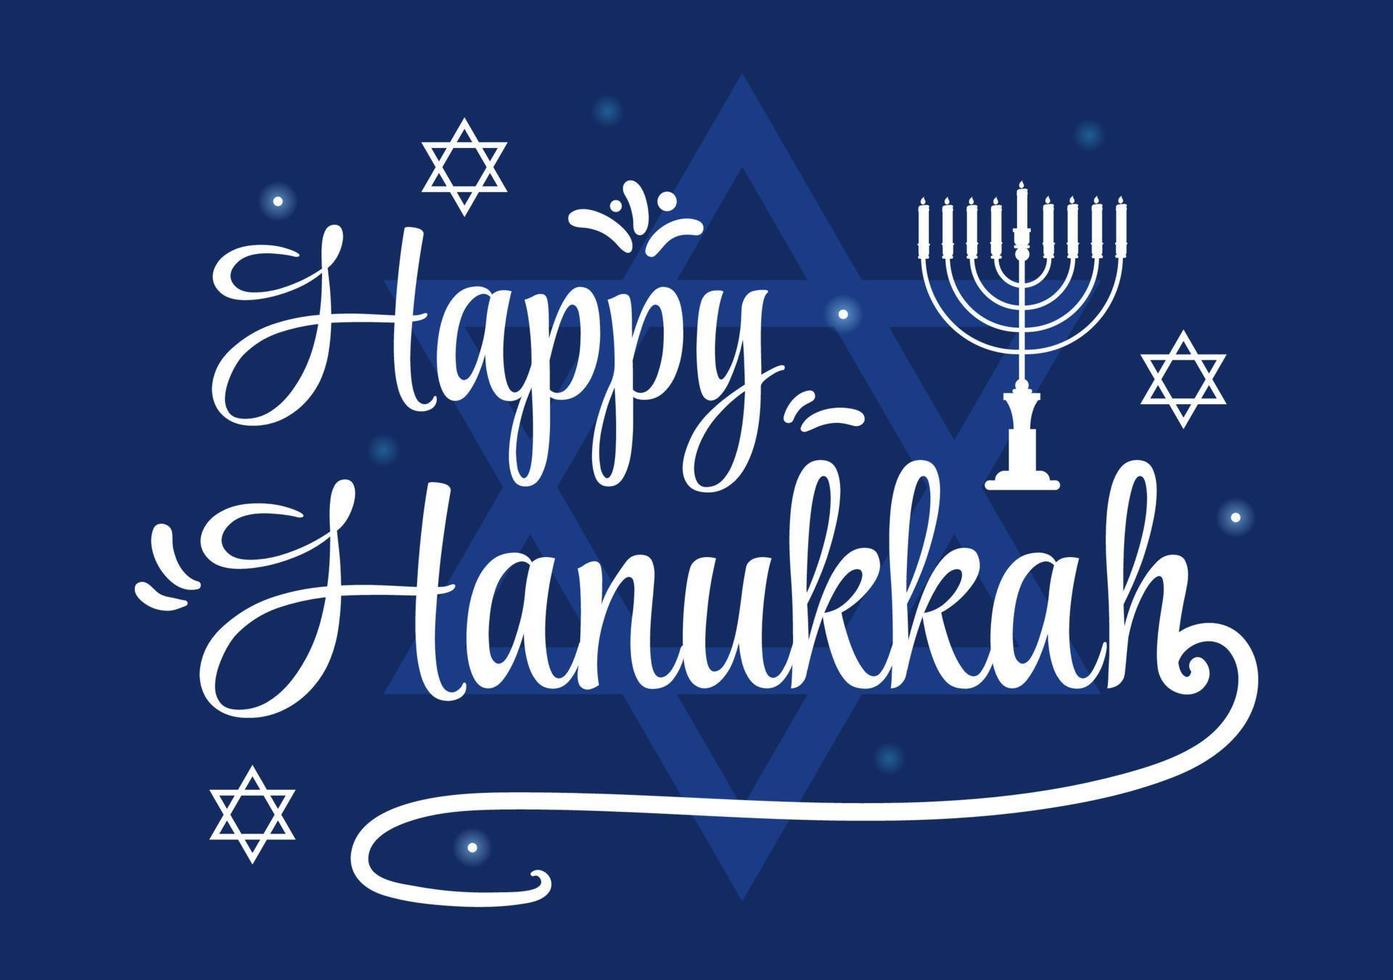 joyeux hanukkah modèle de vacances juives illustration plate de dessin animé dessiné à la main avec menorah, sufganiyot, dreidel et symboles traditionnels vecteur